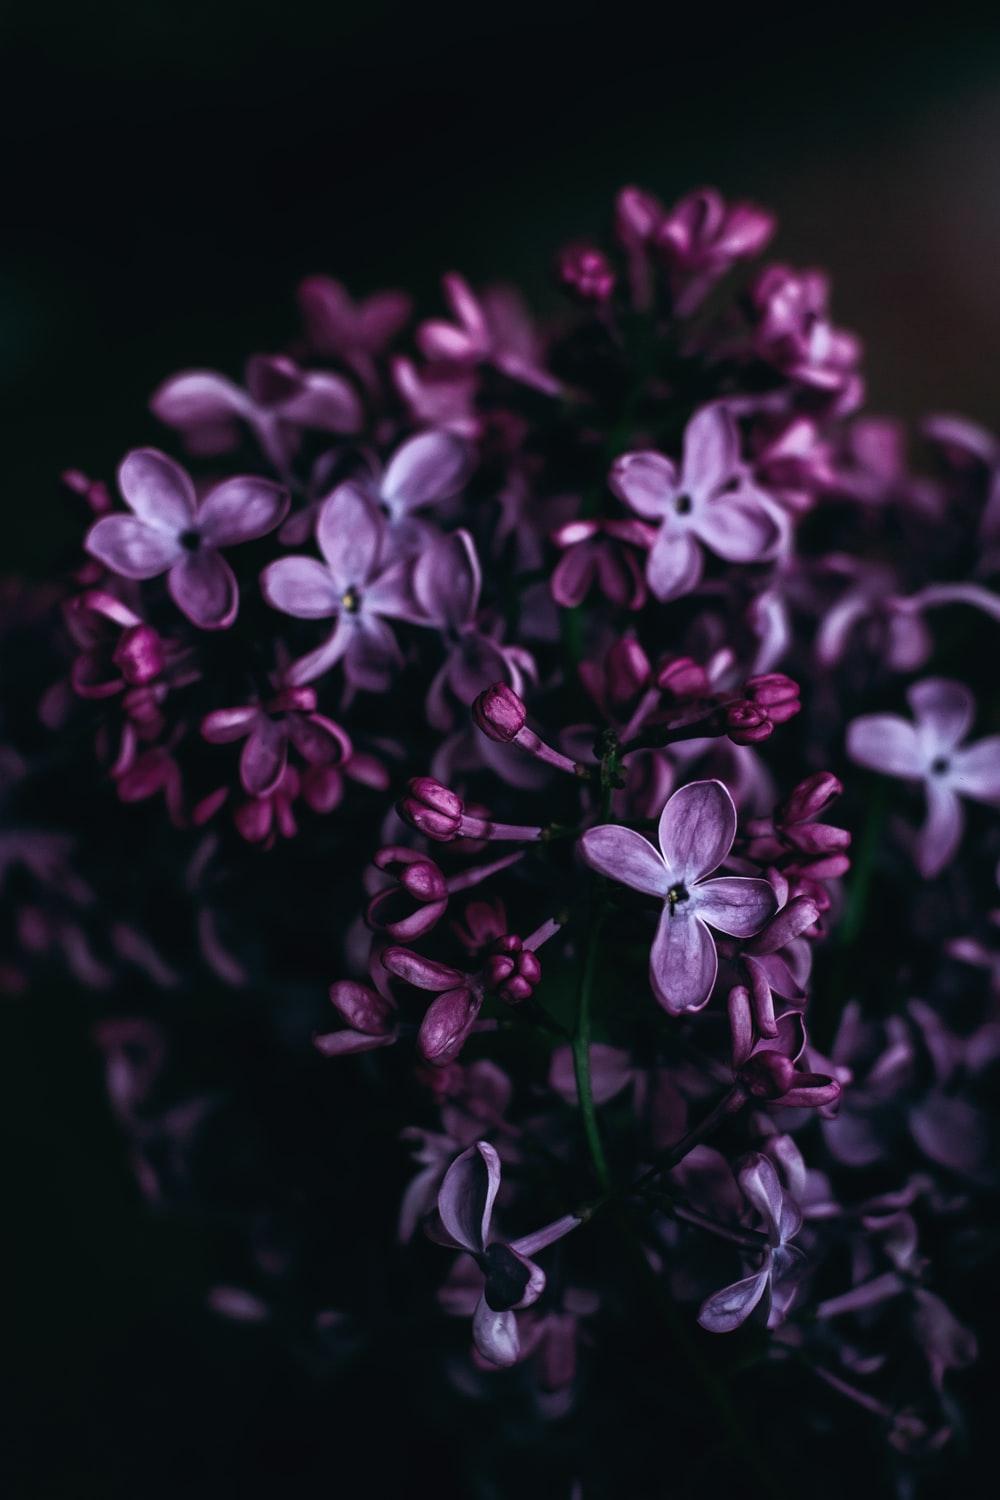 Dark Purple Flowers HD Wallpapers - Top Free Dark Purple Flowers ...